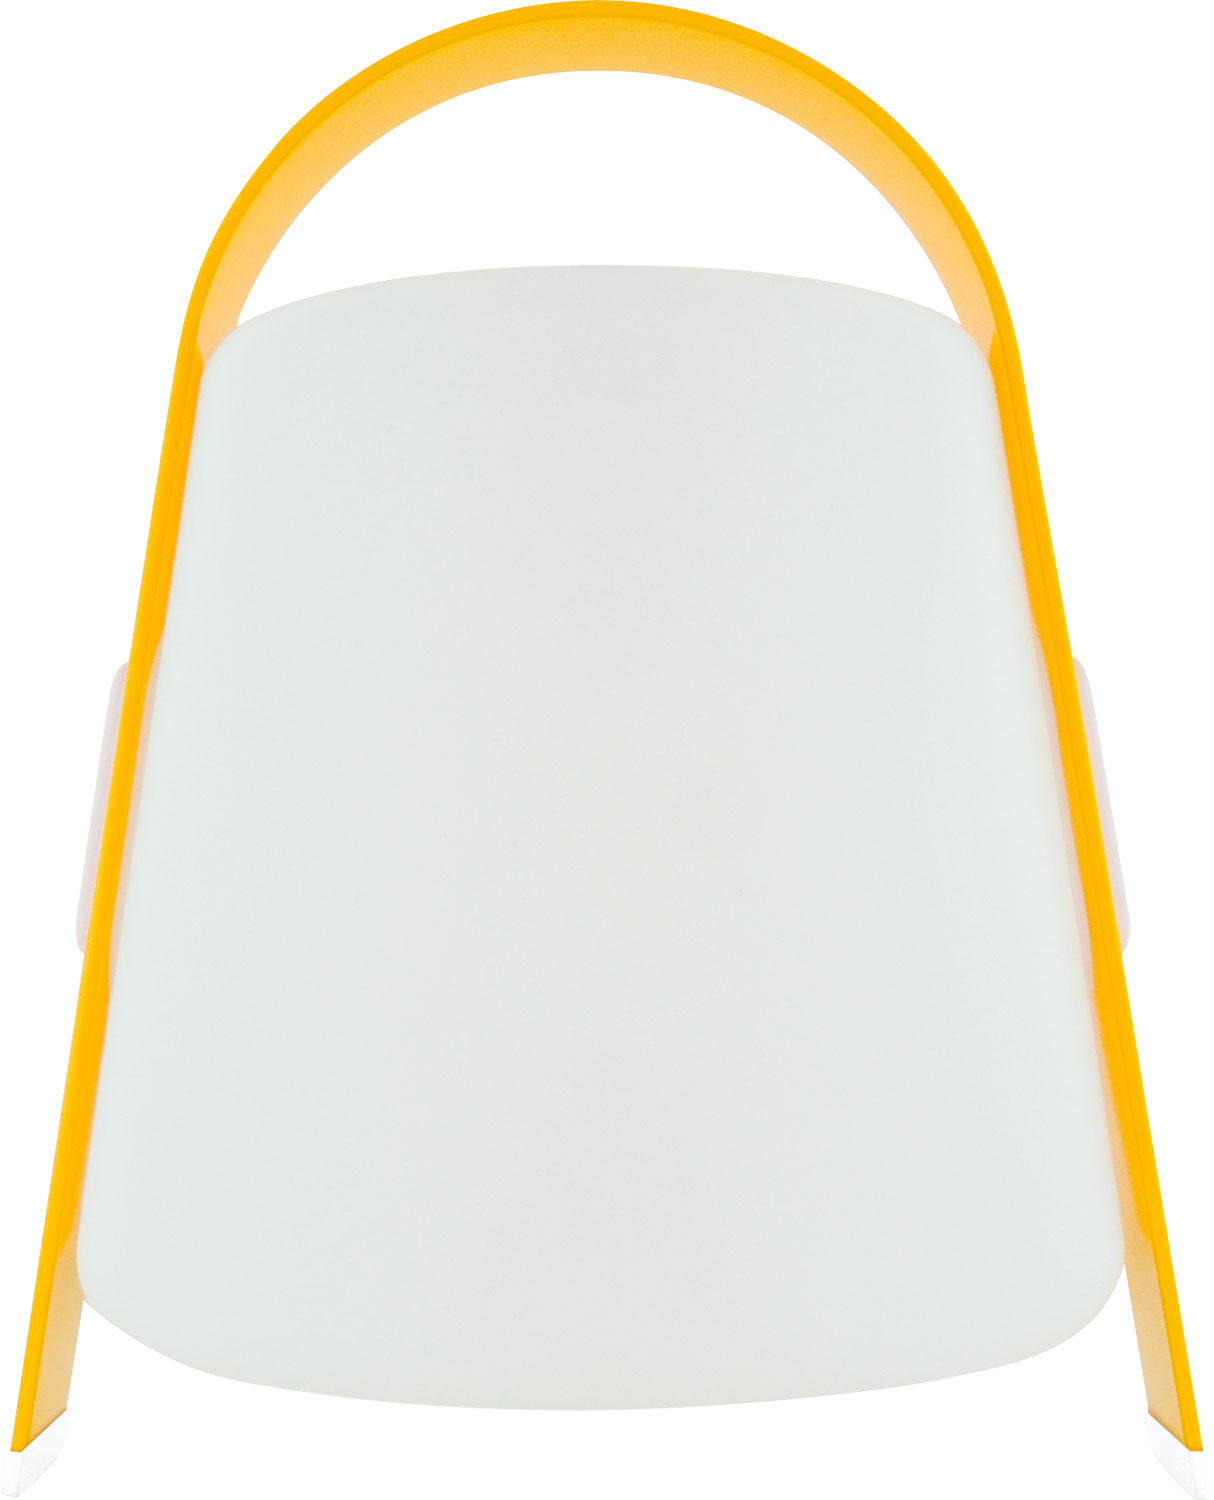 Schwaiger LED Lampe mit Bluetooth Speaker mit Standfuß